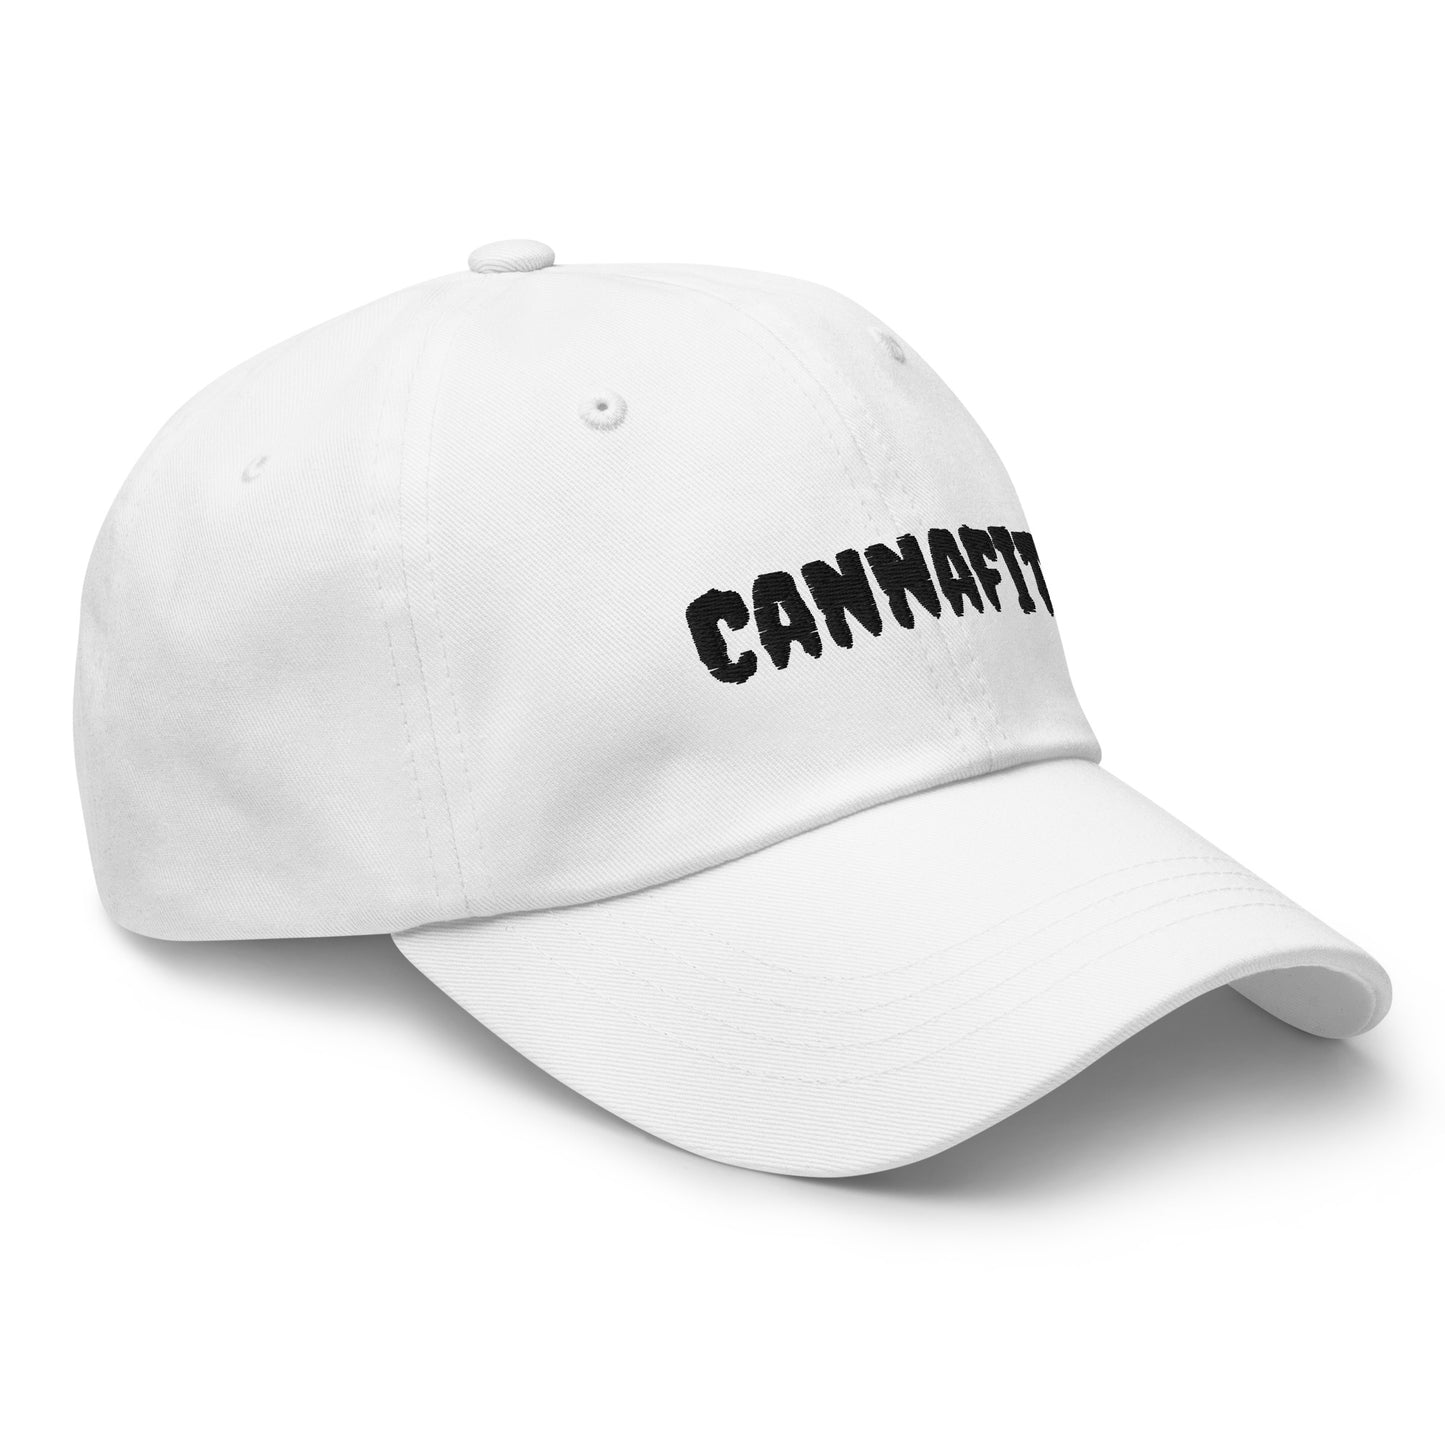 Cannafit Dad Hat